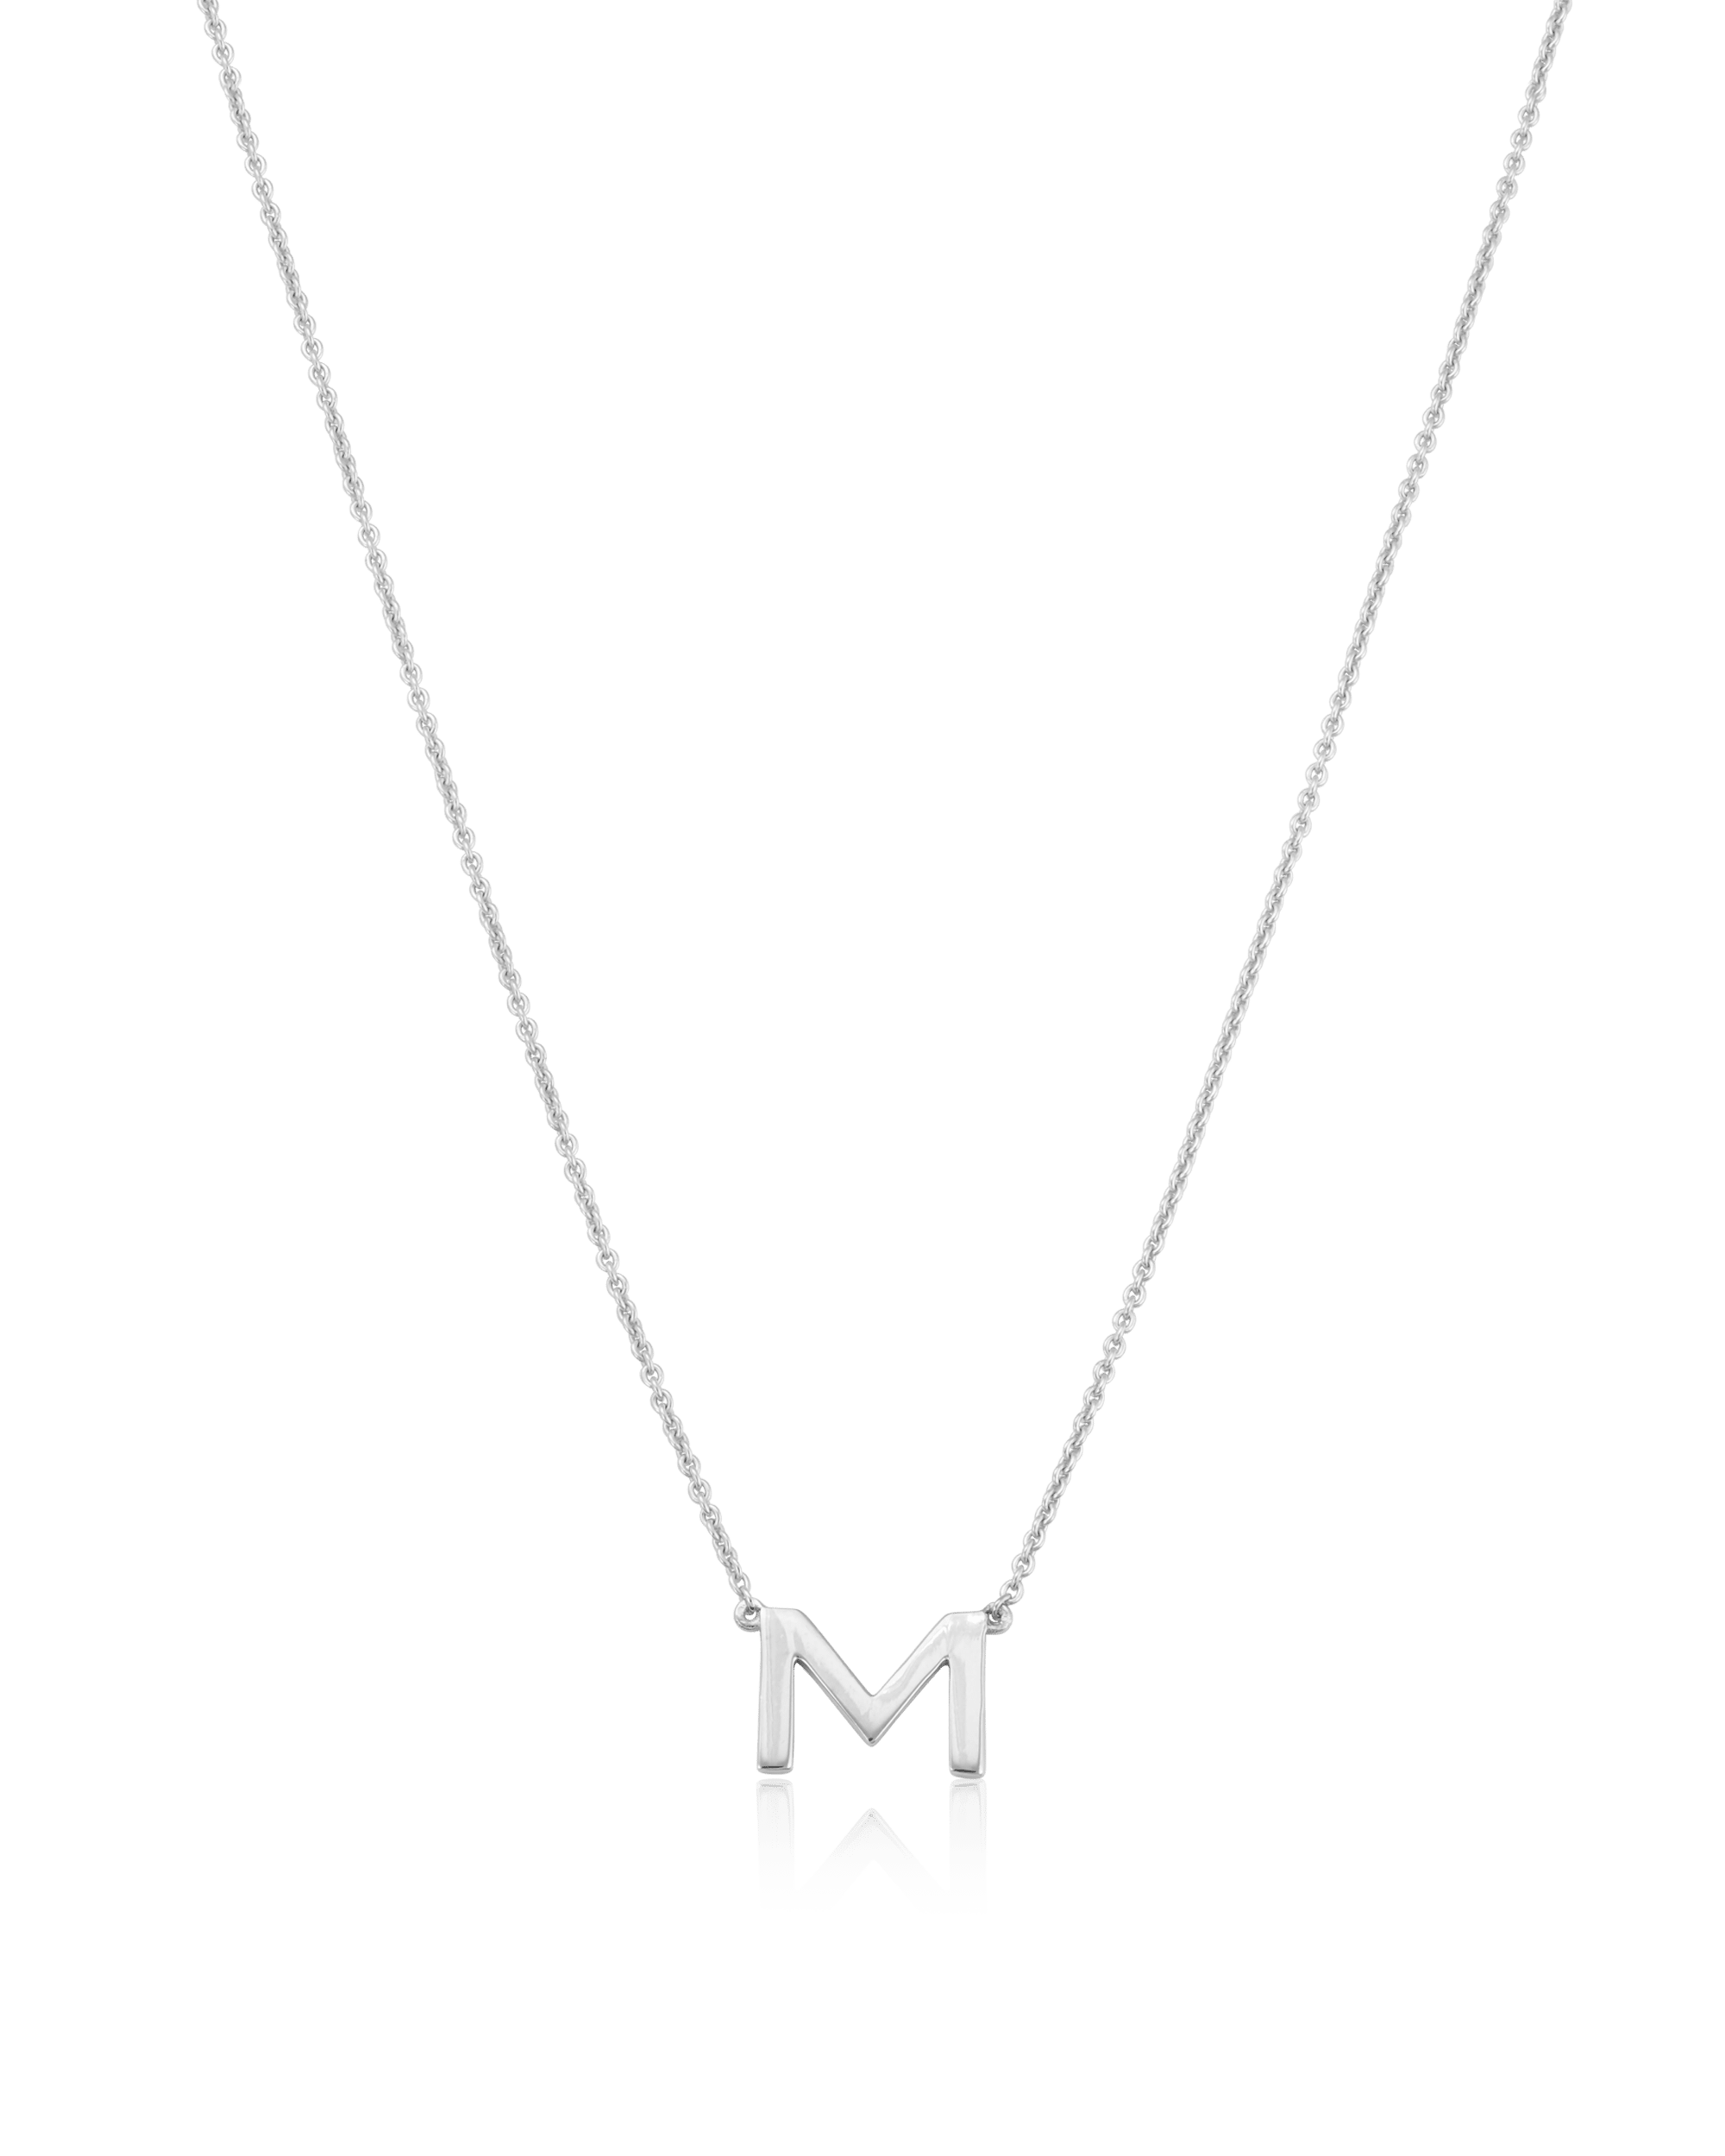 Immy Necklace - 18K Gold Vermeil Necklaces magal-dev 